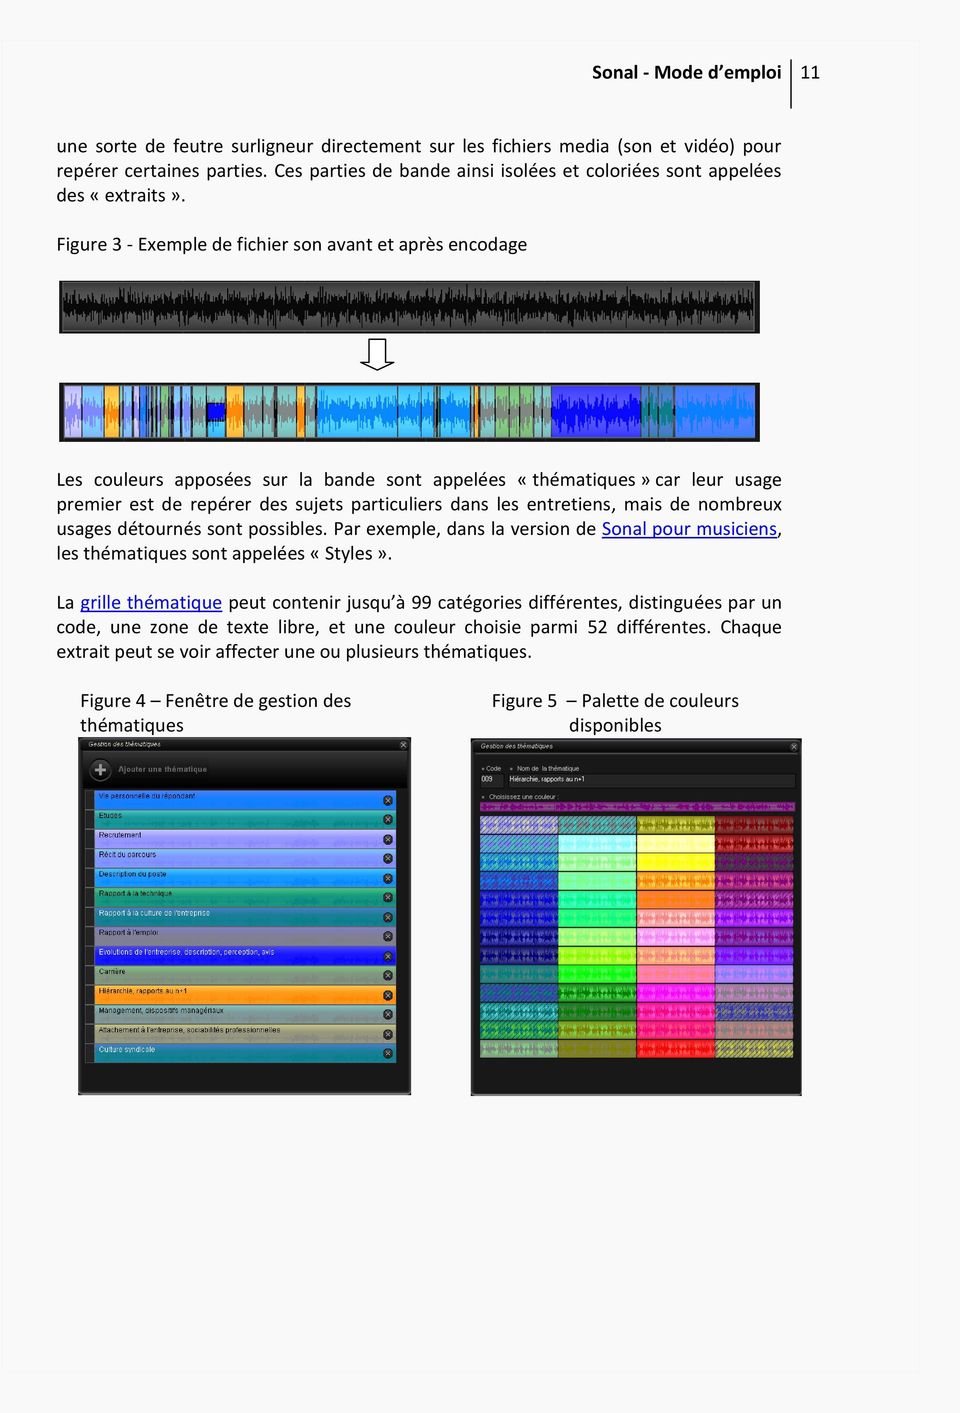 Figure 3 - Exemple de fichier son avant et après encodage Les couleurs apposées sur la bande sont appelées «thématiques» car leur usage premier est de repérer des sujets particuliers dans les